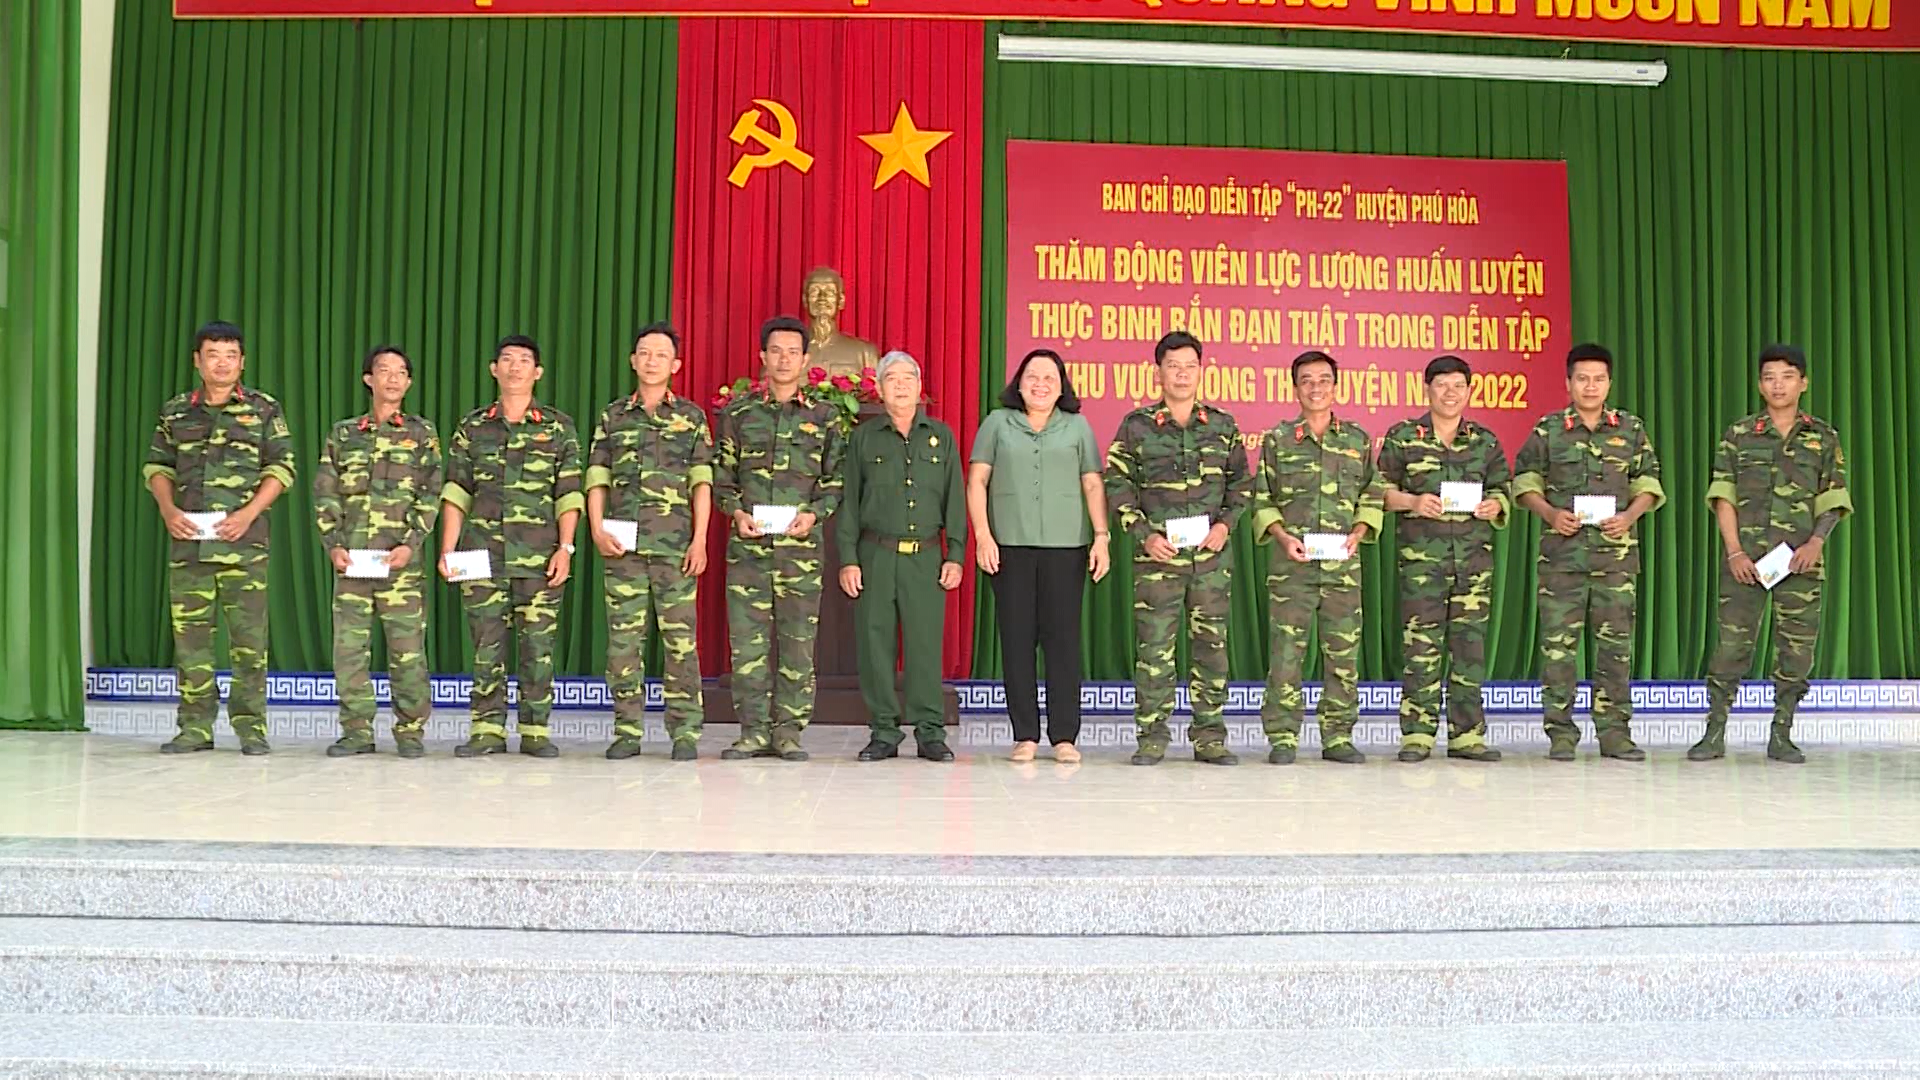 Phú Hòa: thăm, động viên lực lượng huấn luyện thực binh bắn đạn thật trong diễn tập PH-22